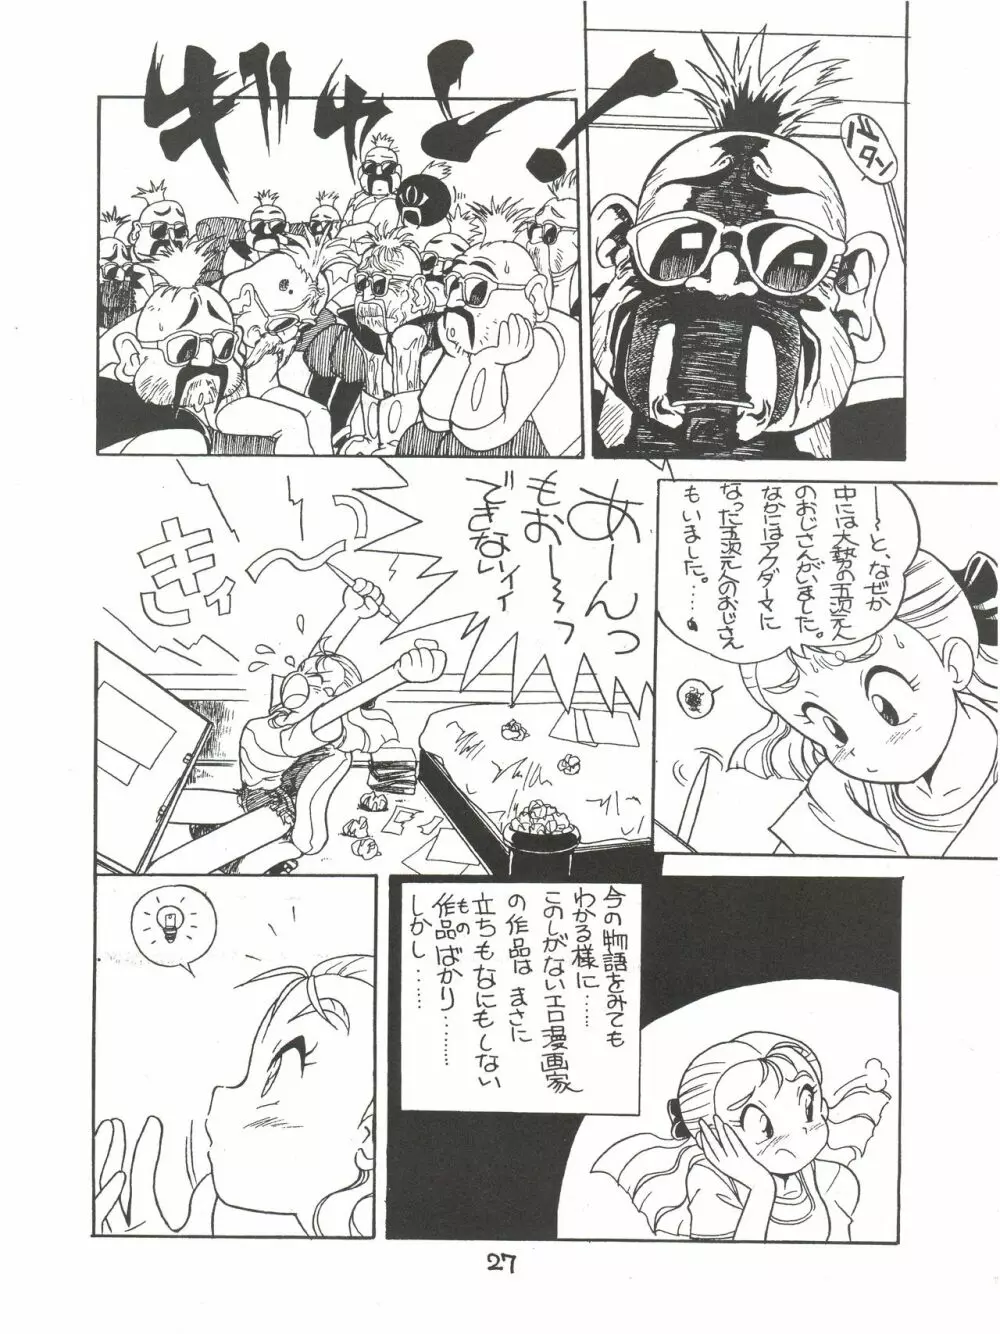 絶対無敵ライジンオー AND NOW 27ページ